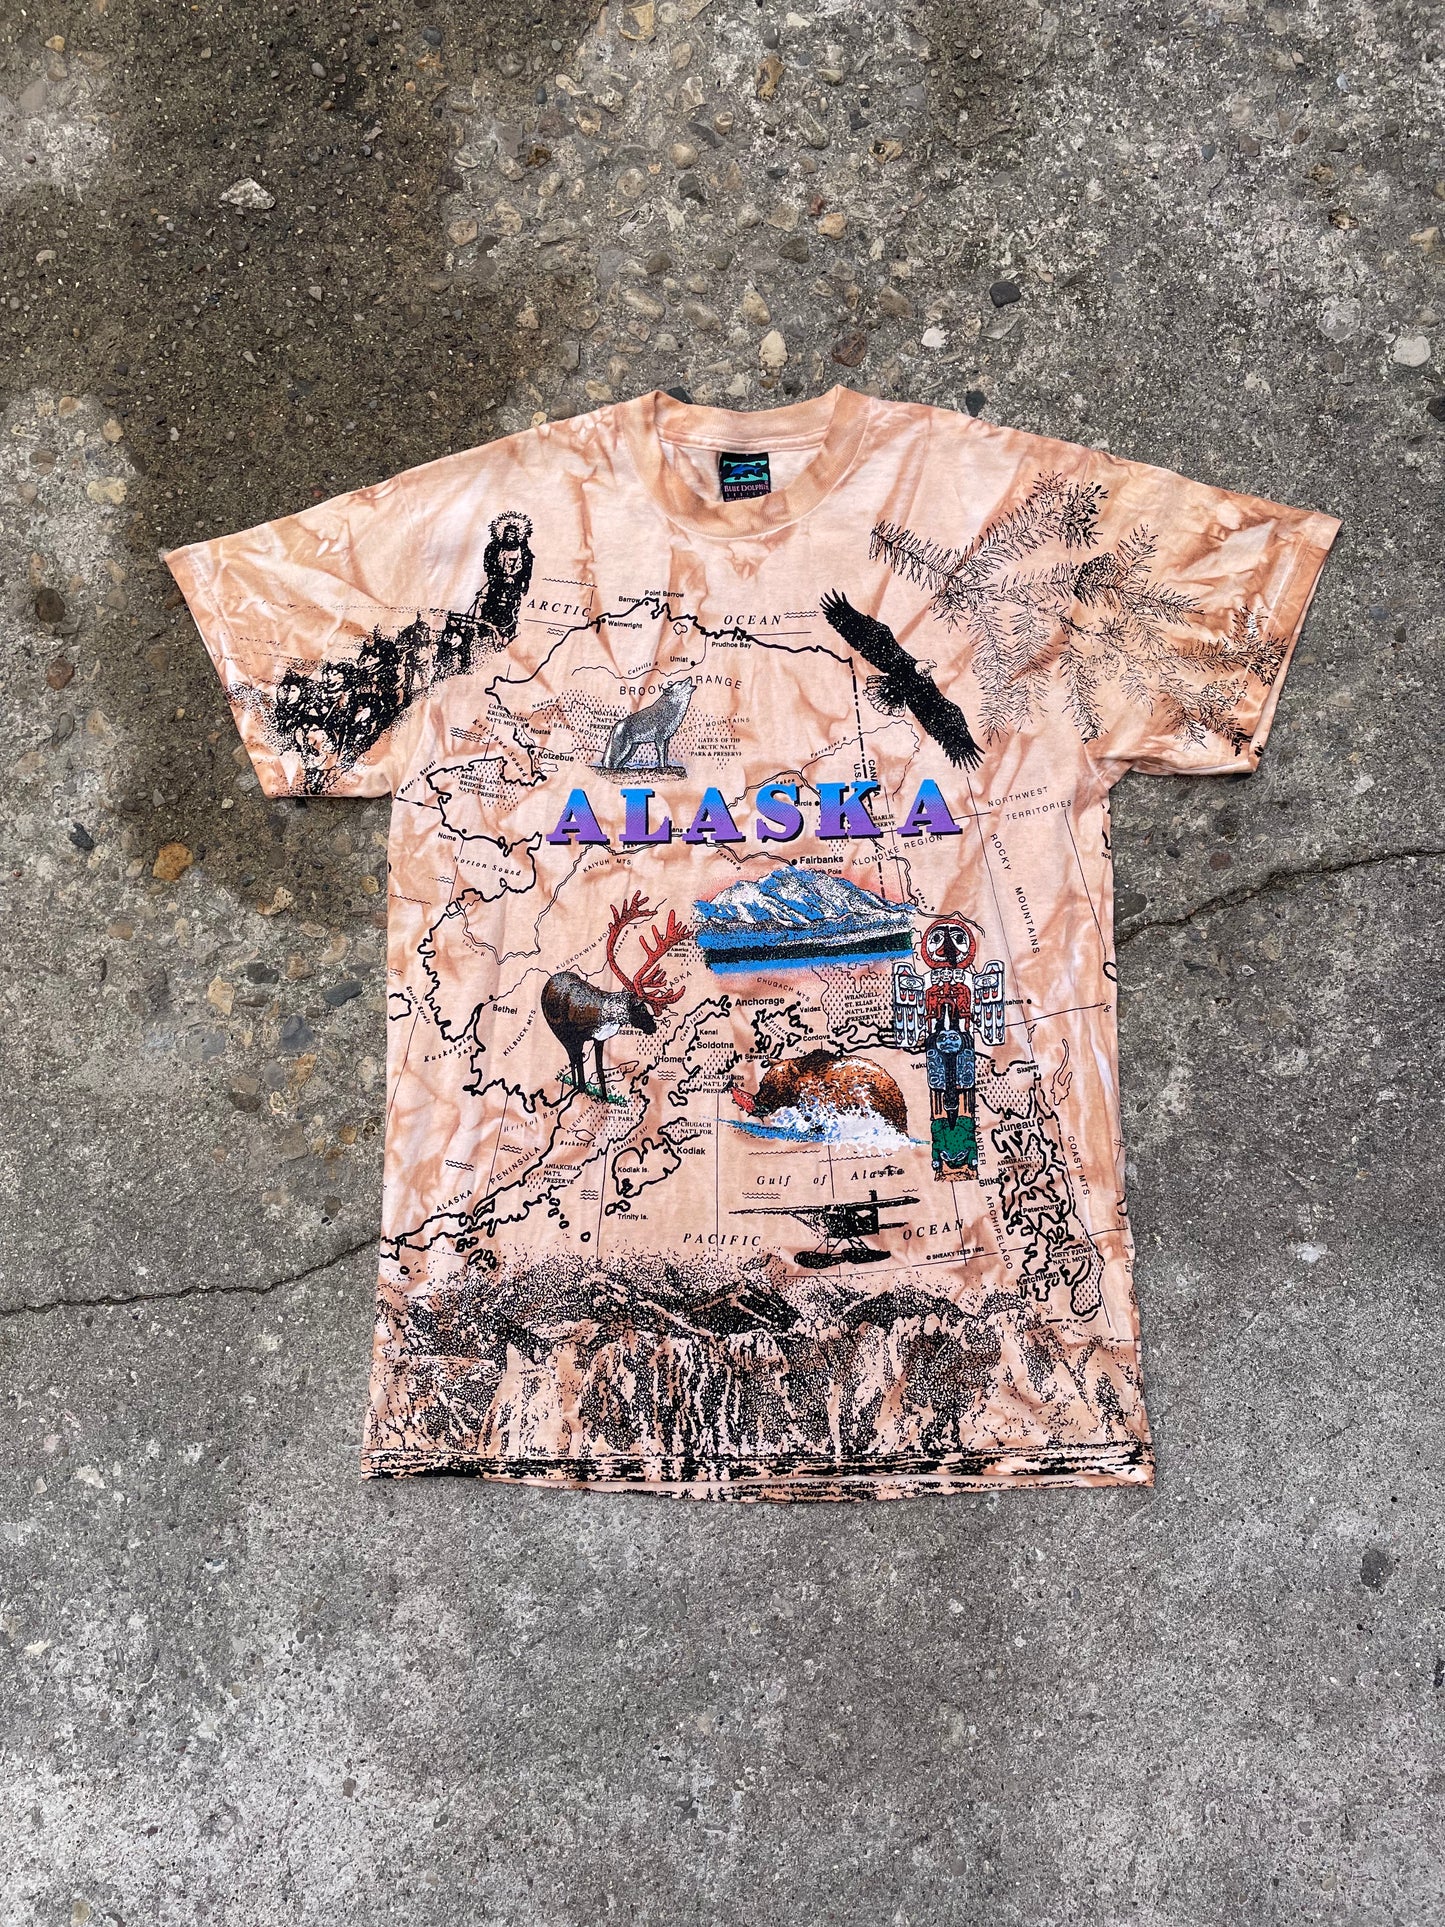 1993 Alaska All Over Print Map T-Shirt - L